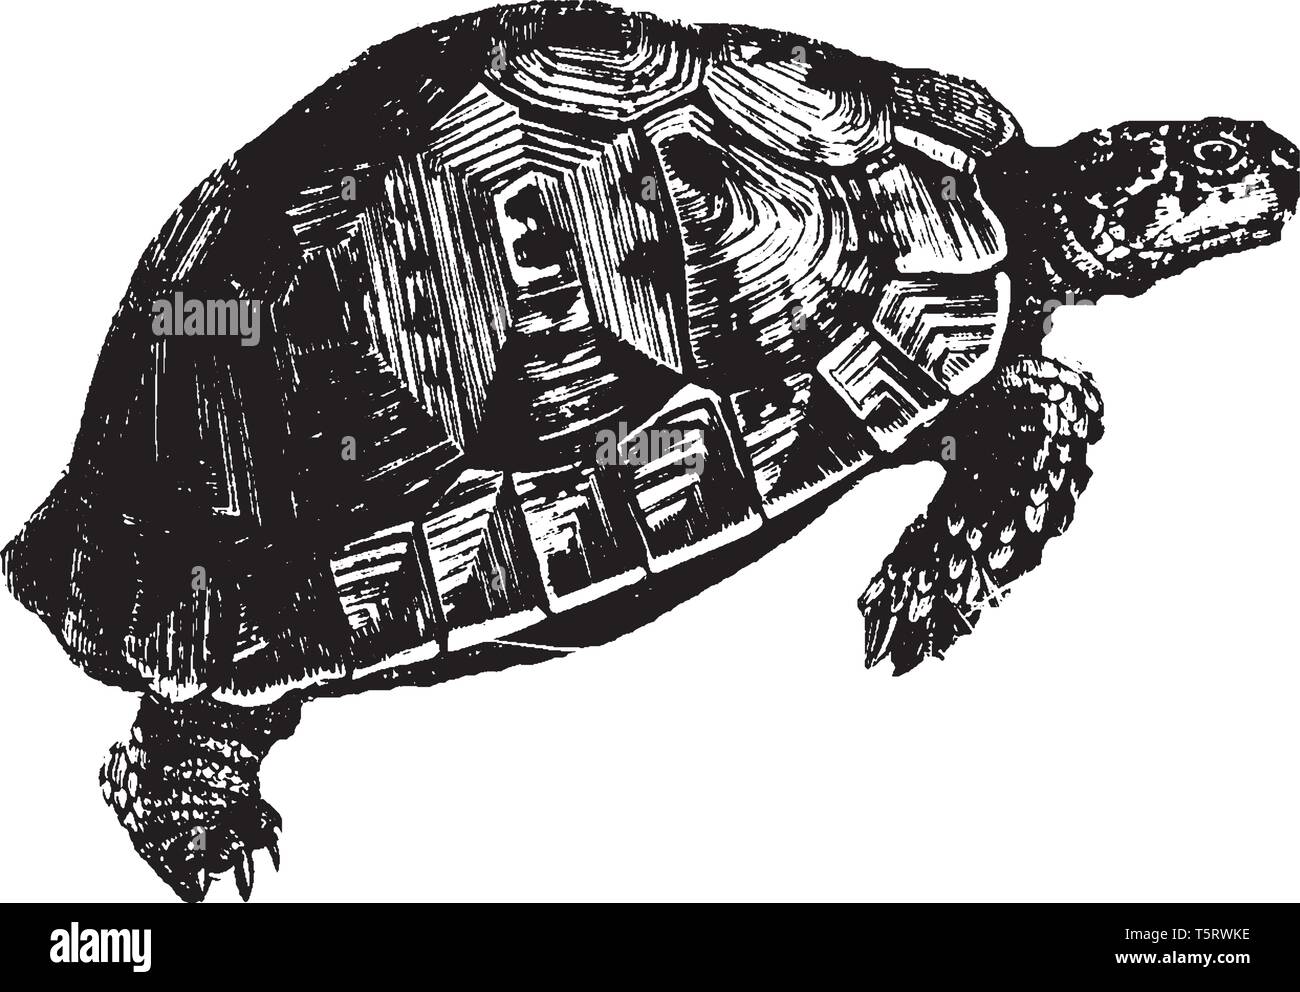 Les tortues terrestres sont une famille Testudinidae de terrain maison d'habitation des reptiles de l'ordre Testudines, vintage dessin ou gravure illustration. Illustration de Vecteur